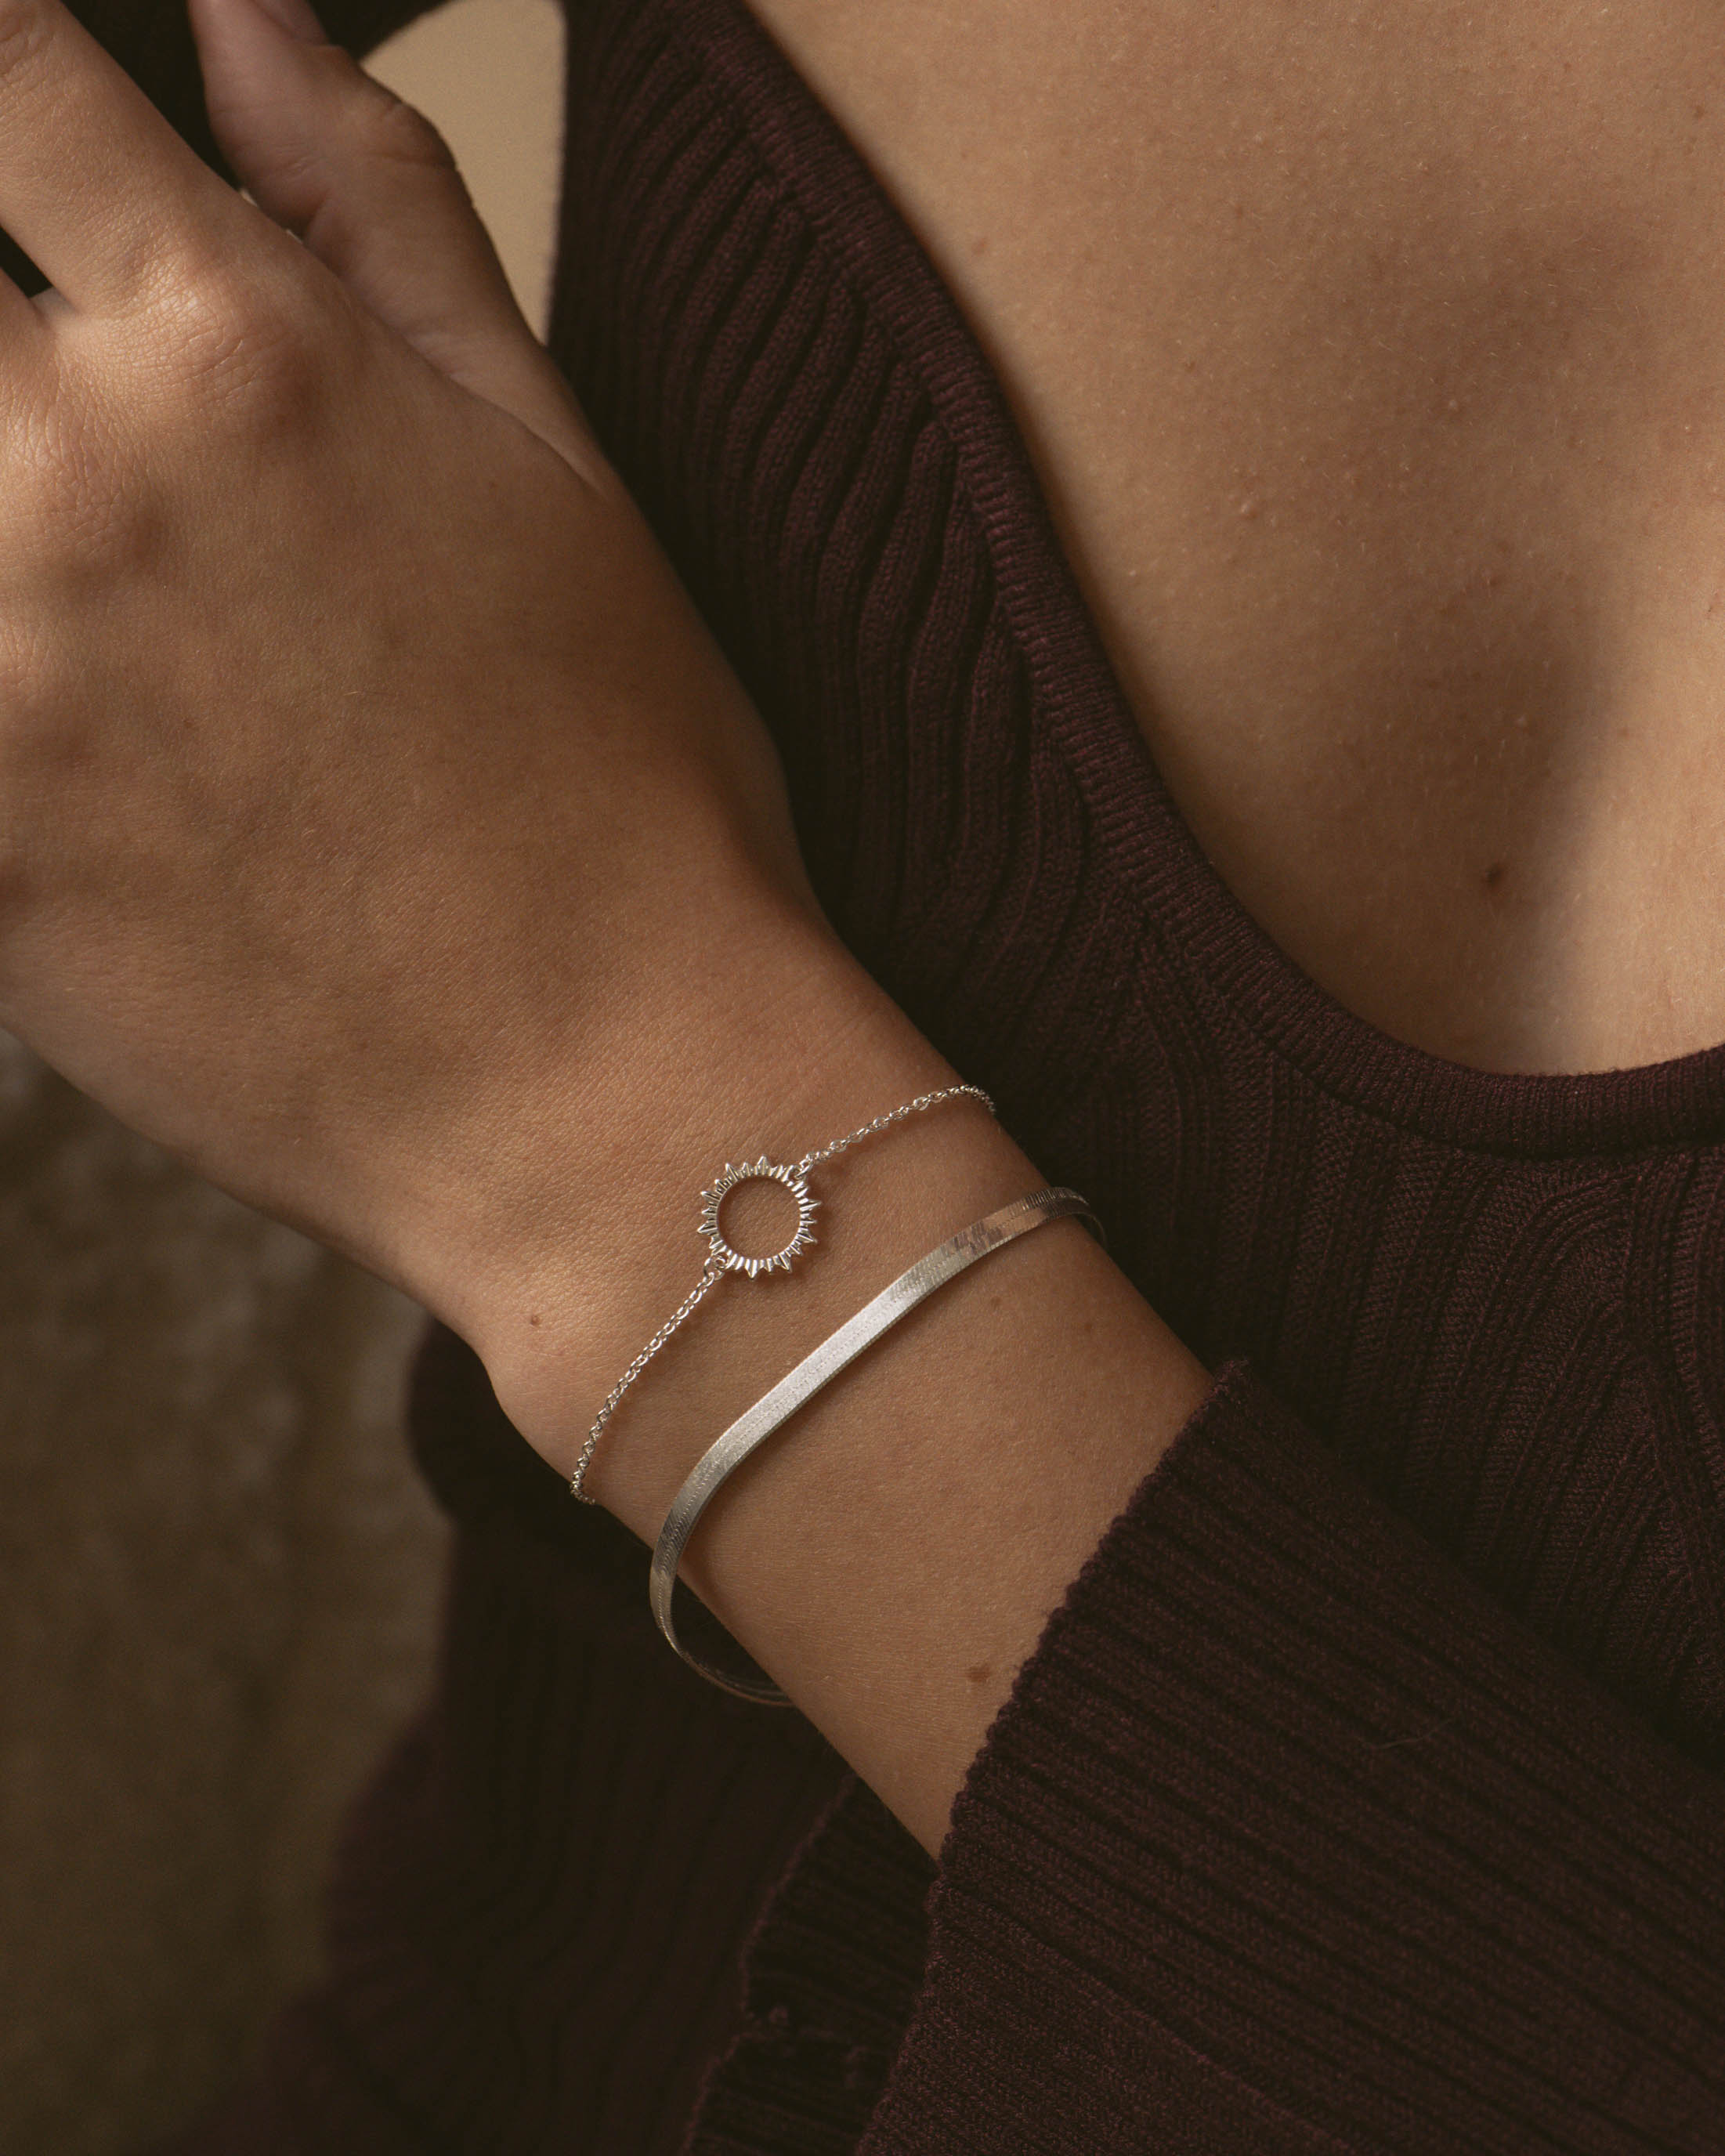 Compo de bracelets fabriqués en France, composée d'un bracelet en chaîne plate, et d'un bracelet en chaîne fine avec un soleil ajouré, en argent massif 925. 